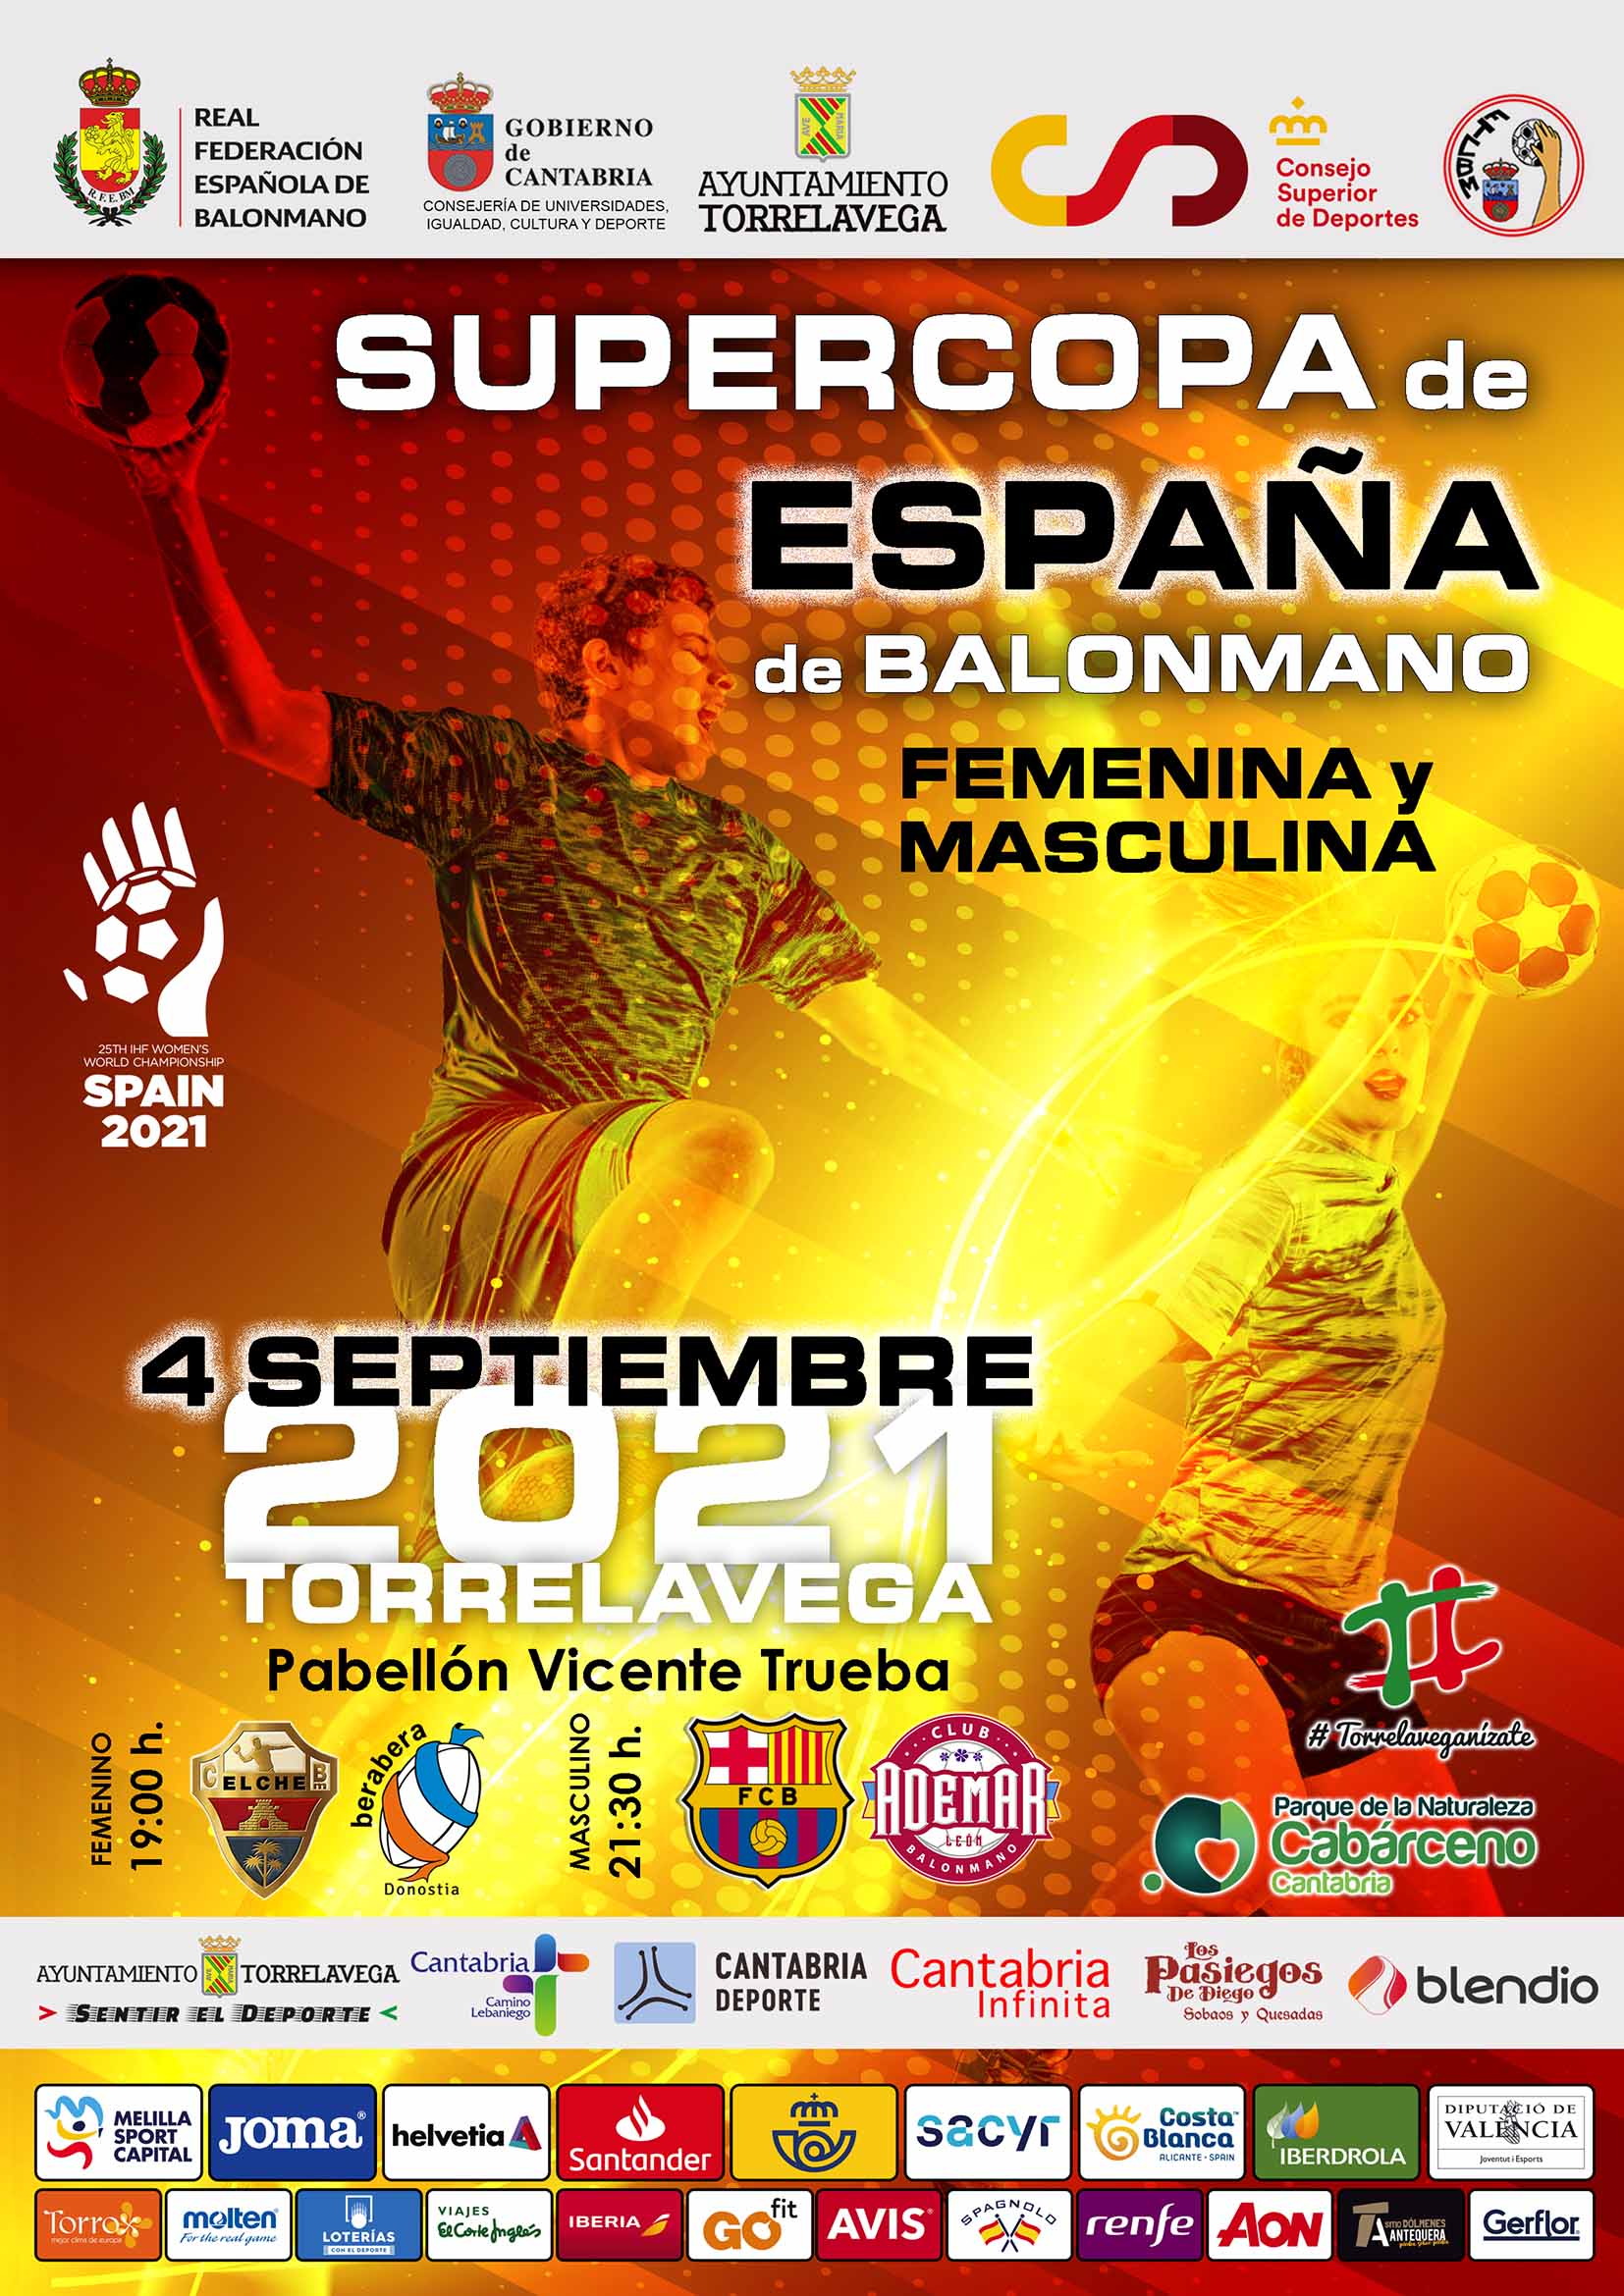 La Supercopa de España de Balonmano abre una temporada histórica de balonmano en Torrelavega / RFEBM